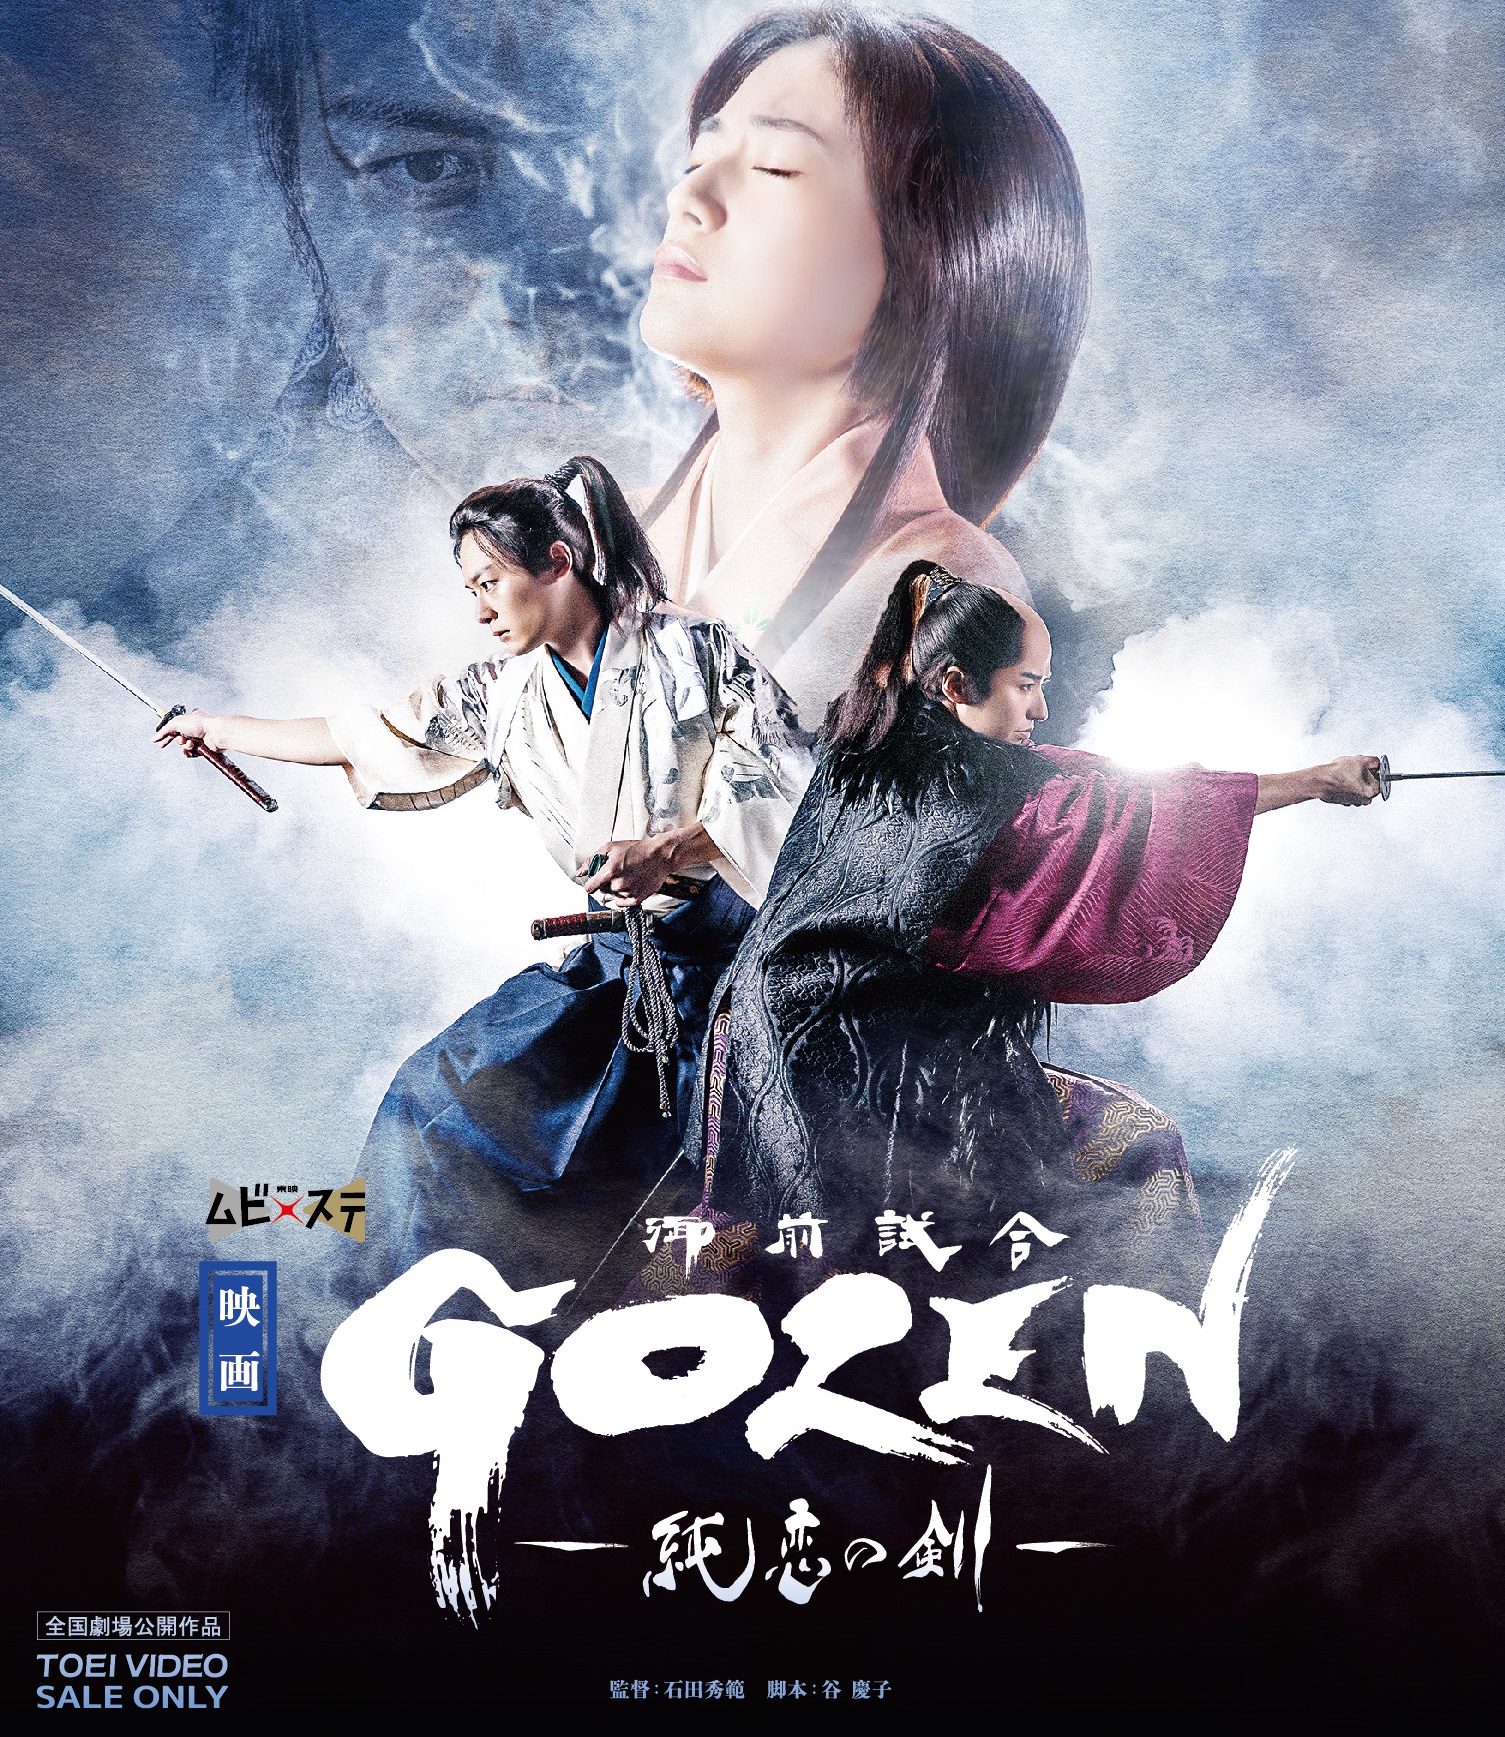 映画「GOZEN‐純恋の剣‐」【Blu-ray】